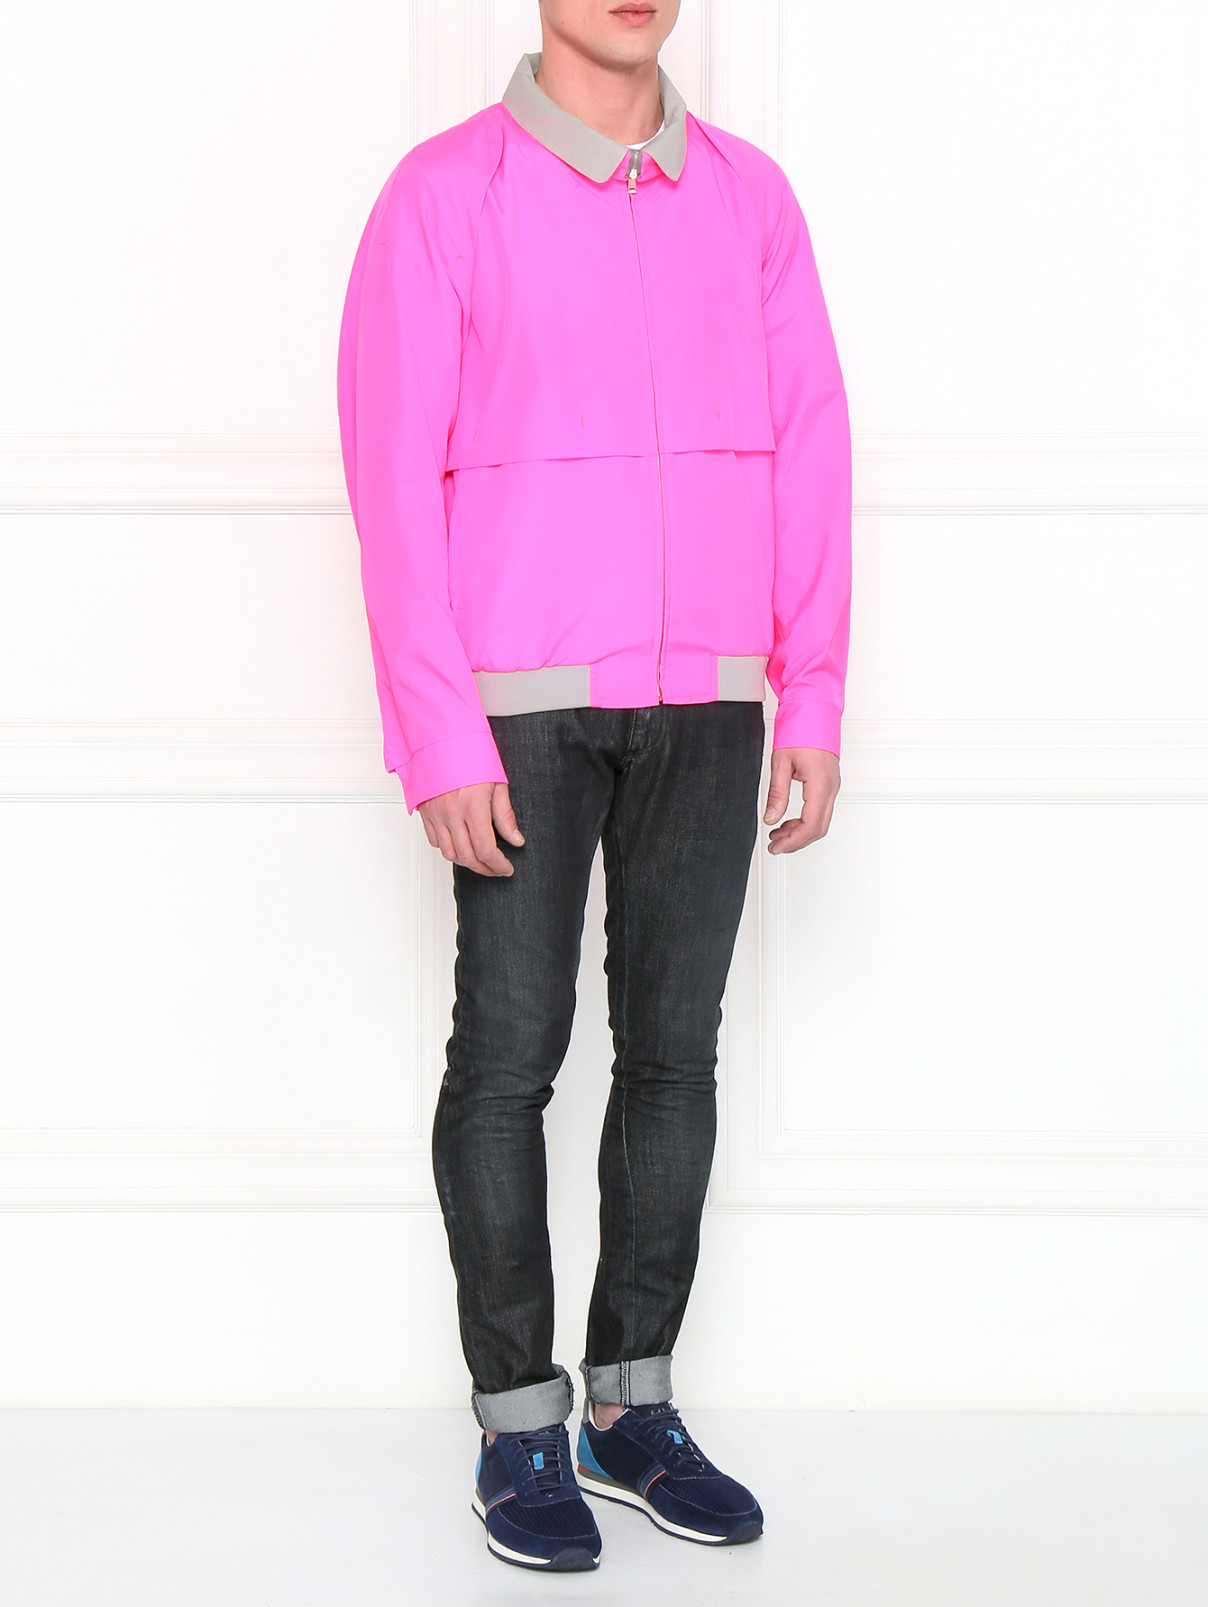 Куртка с контрастными вставками на молнии Jil Sander  –  Модель Общий вид  – Цвет:  Фиолетовый